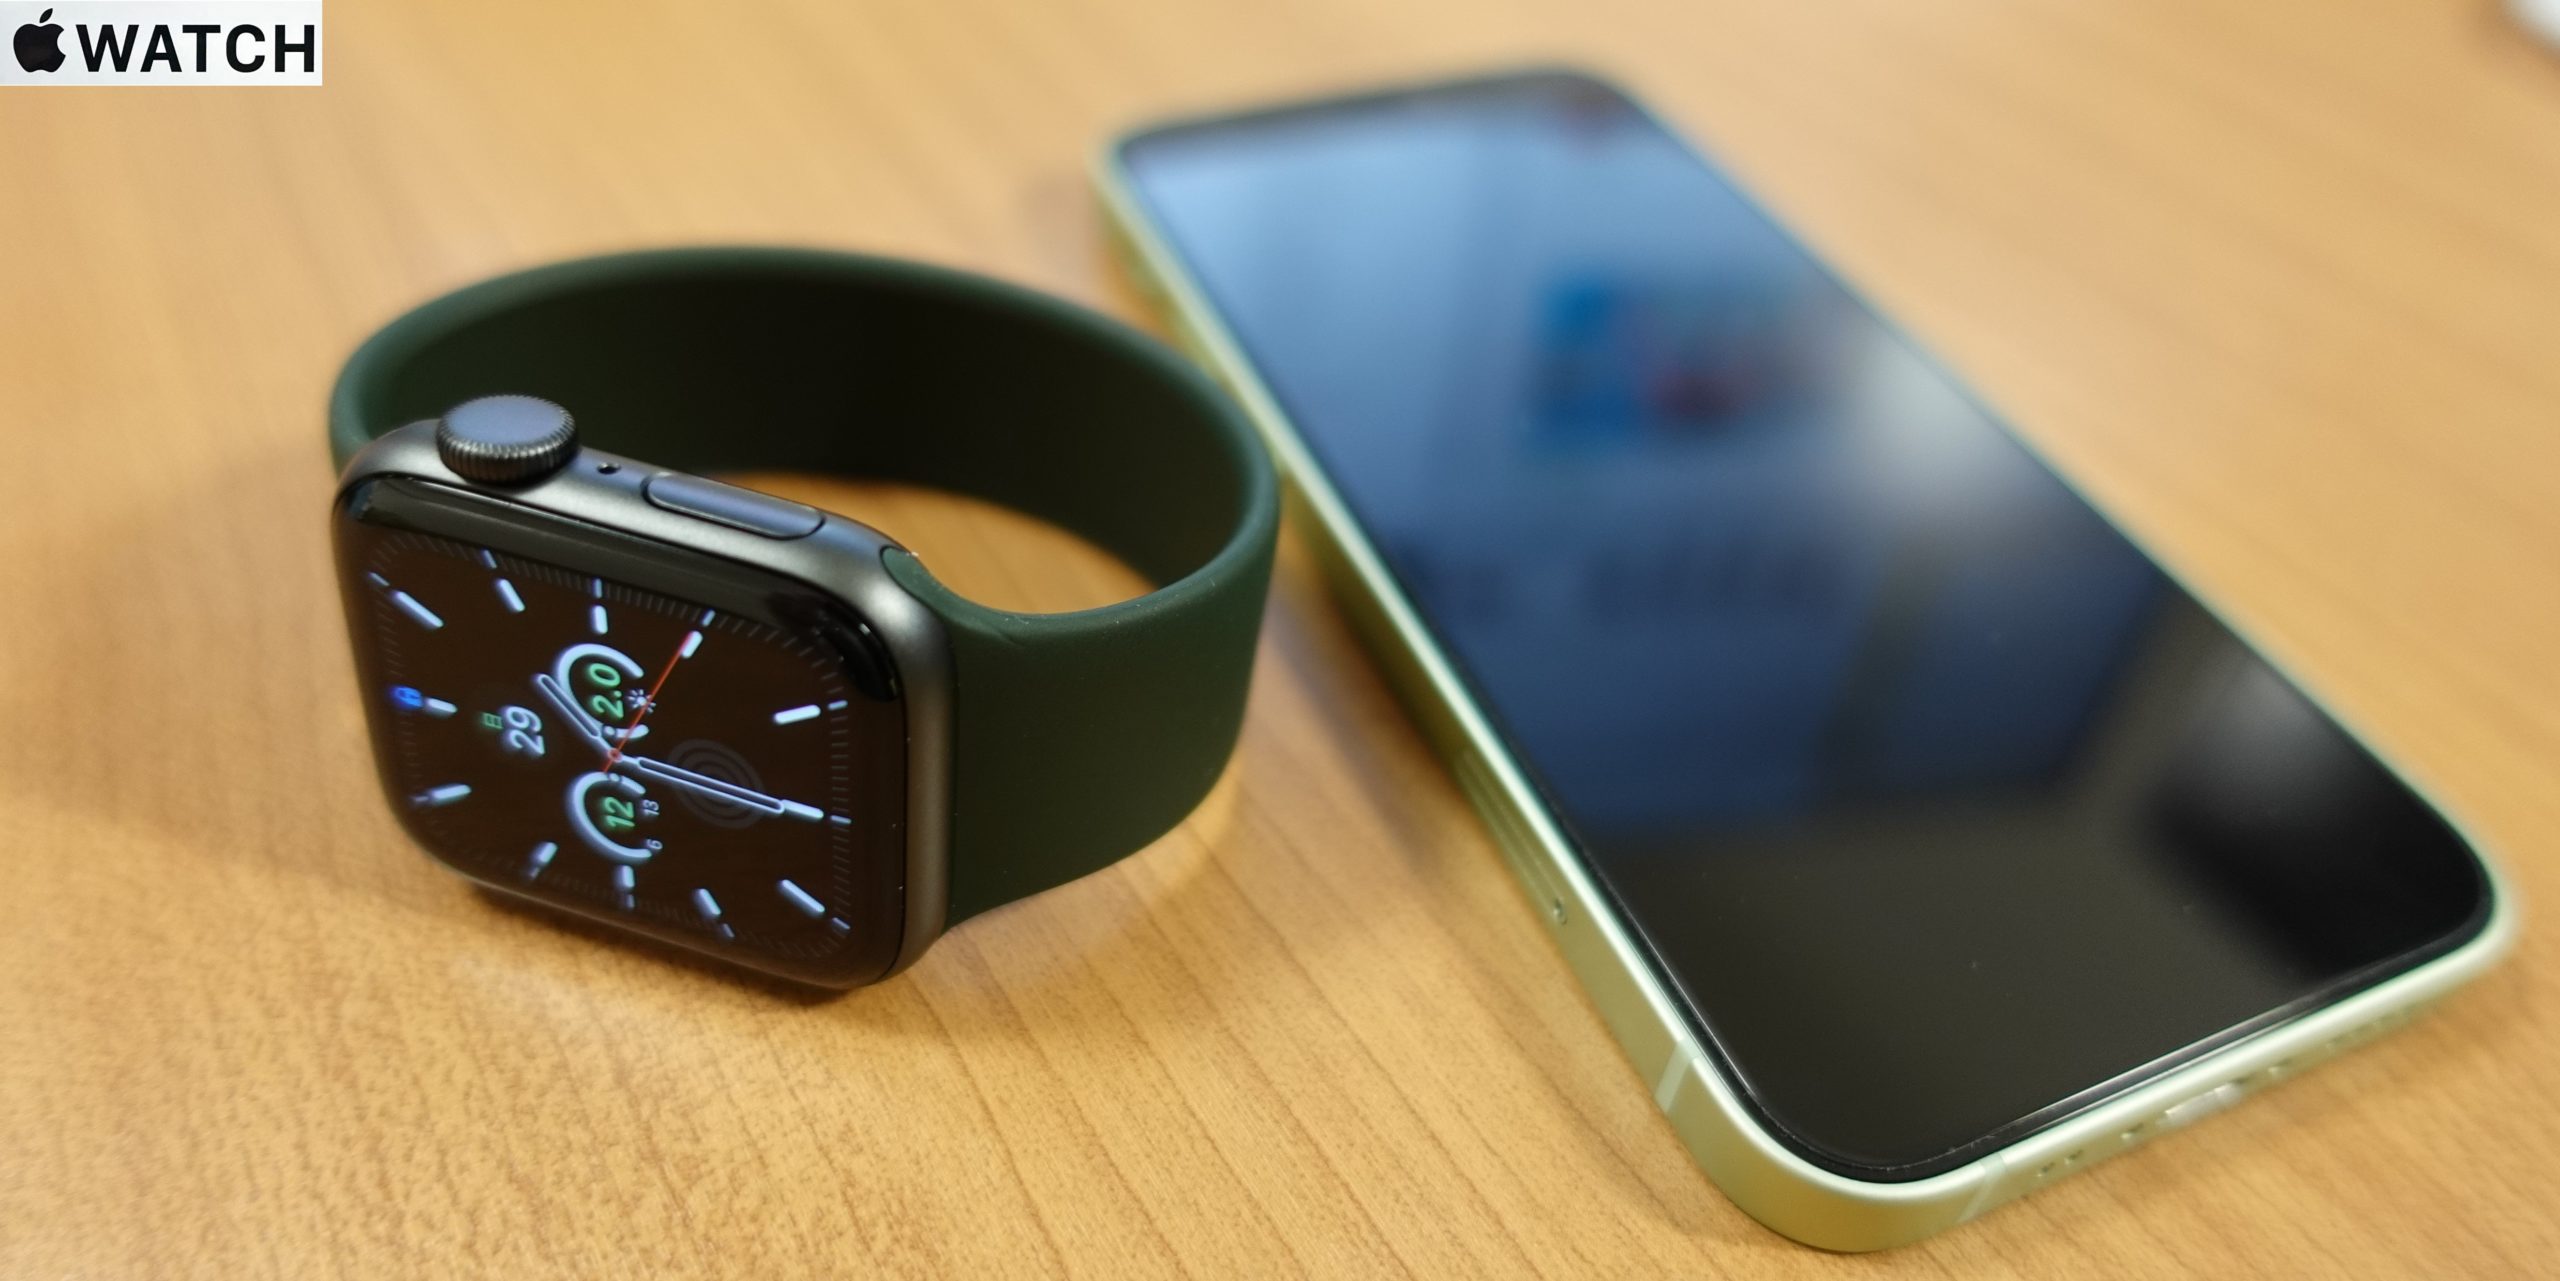 【Apple Watch SE】今更買ったからレビューするよ【iPhone12mini連携】 | タナレッジウェアハウス